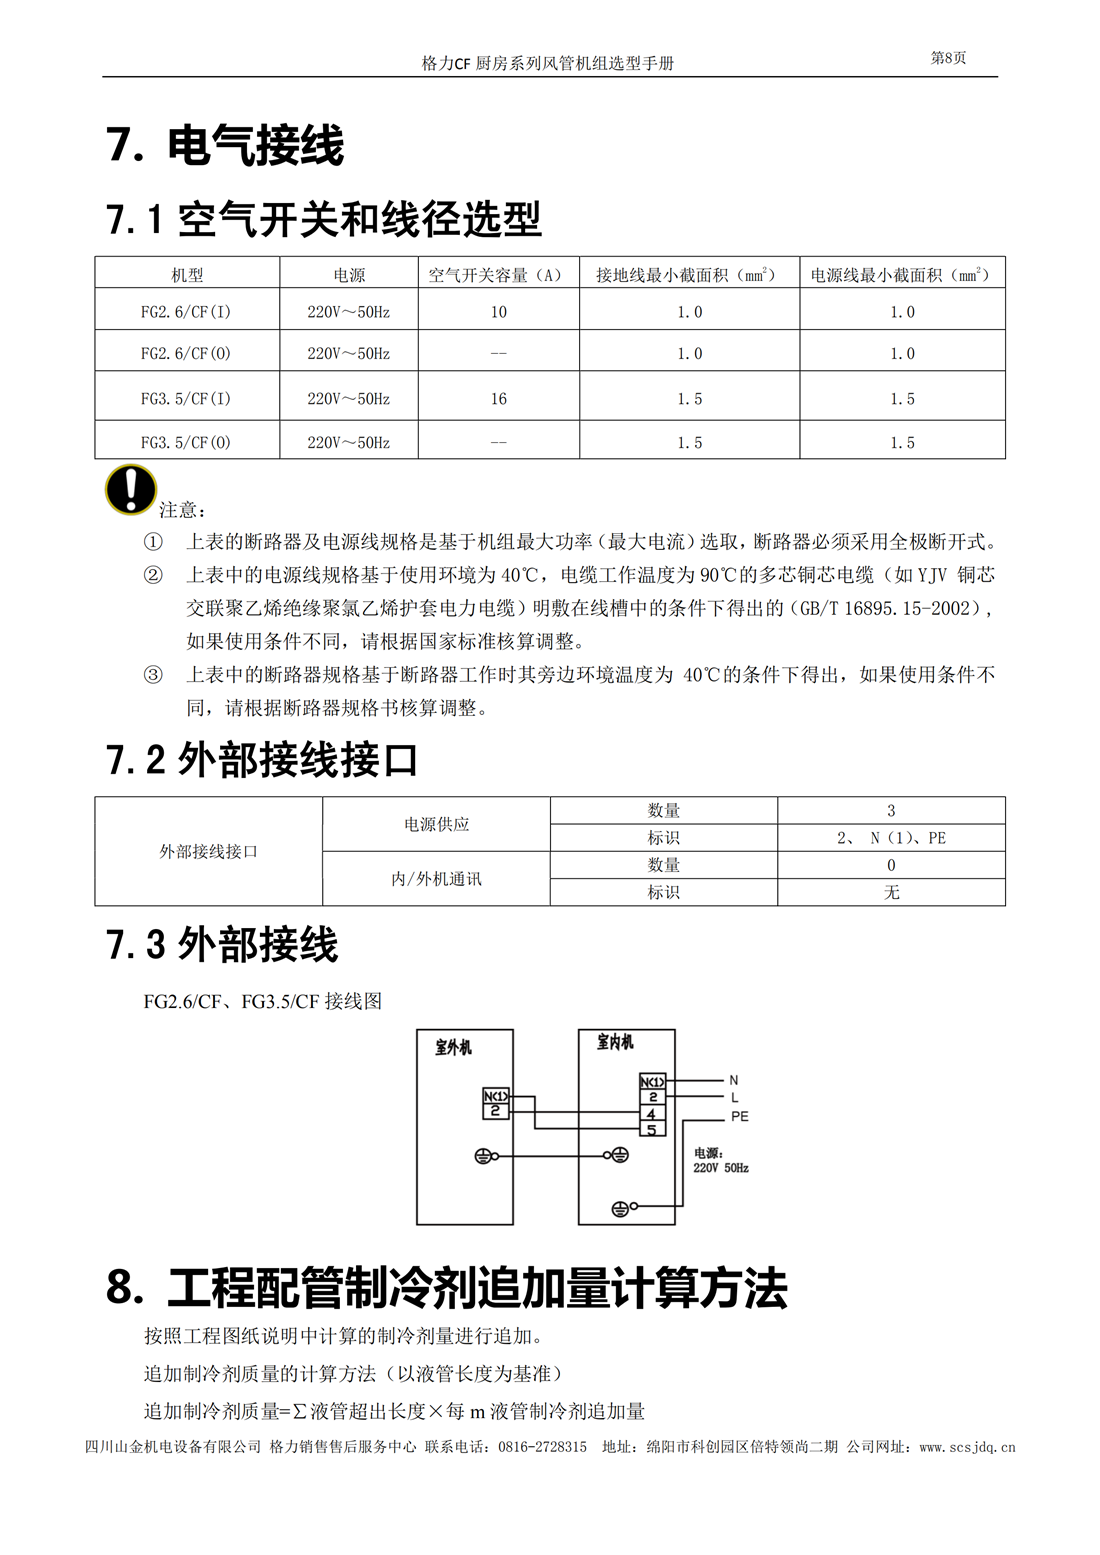 CF厨房系列风管送风式空调机组选型手册_09.png